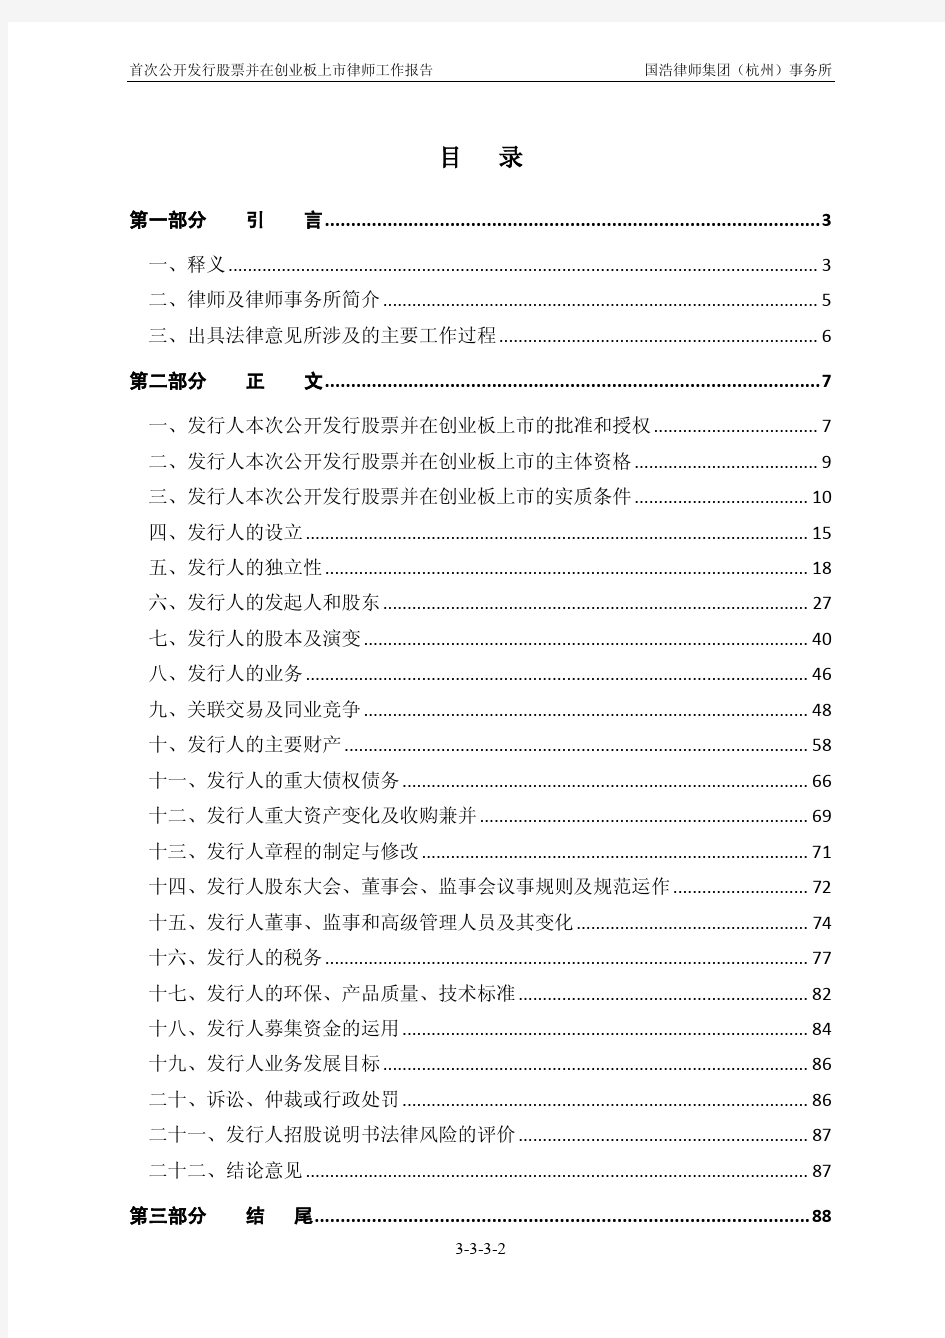 晶盛机电：国浩律师集团(杭州)事务所关于公司首次公开发行股票并在创业板上市的律师工作报告